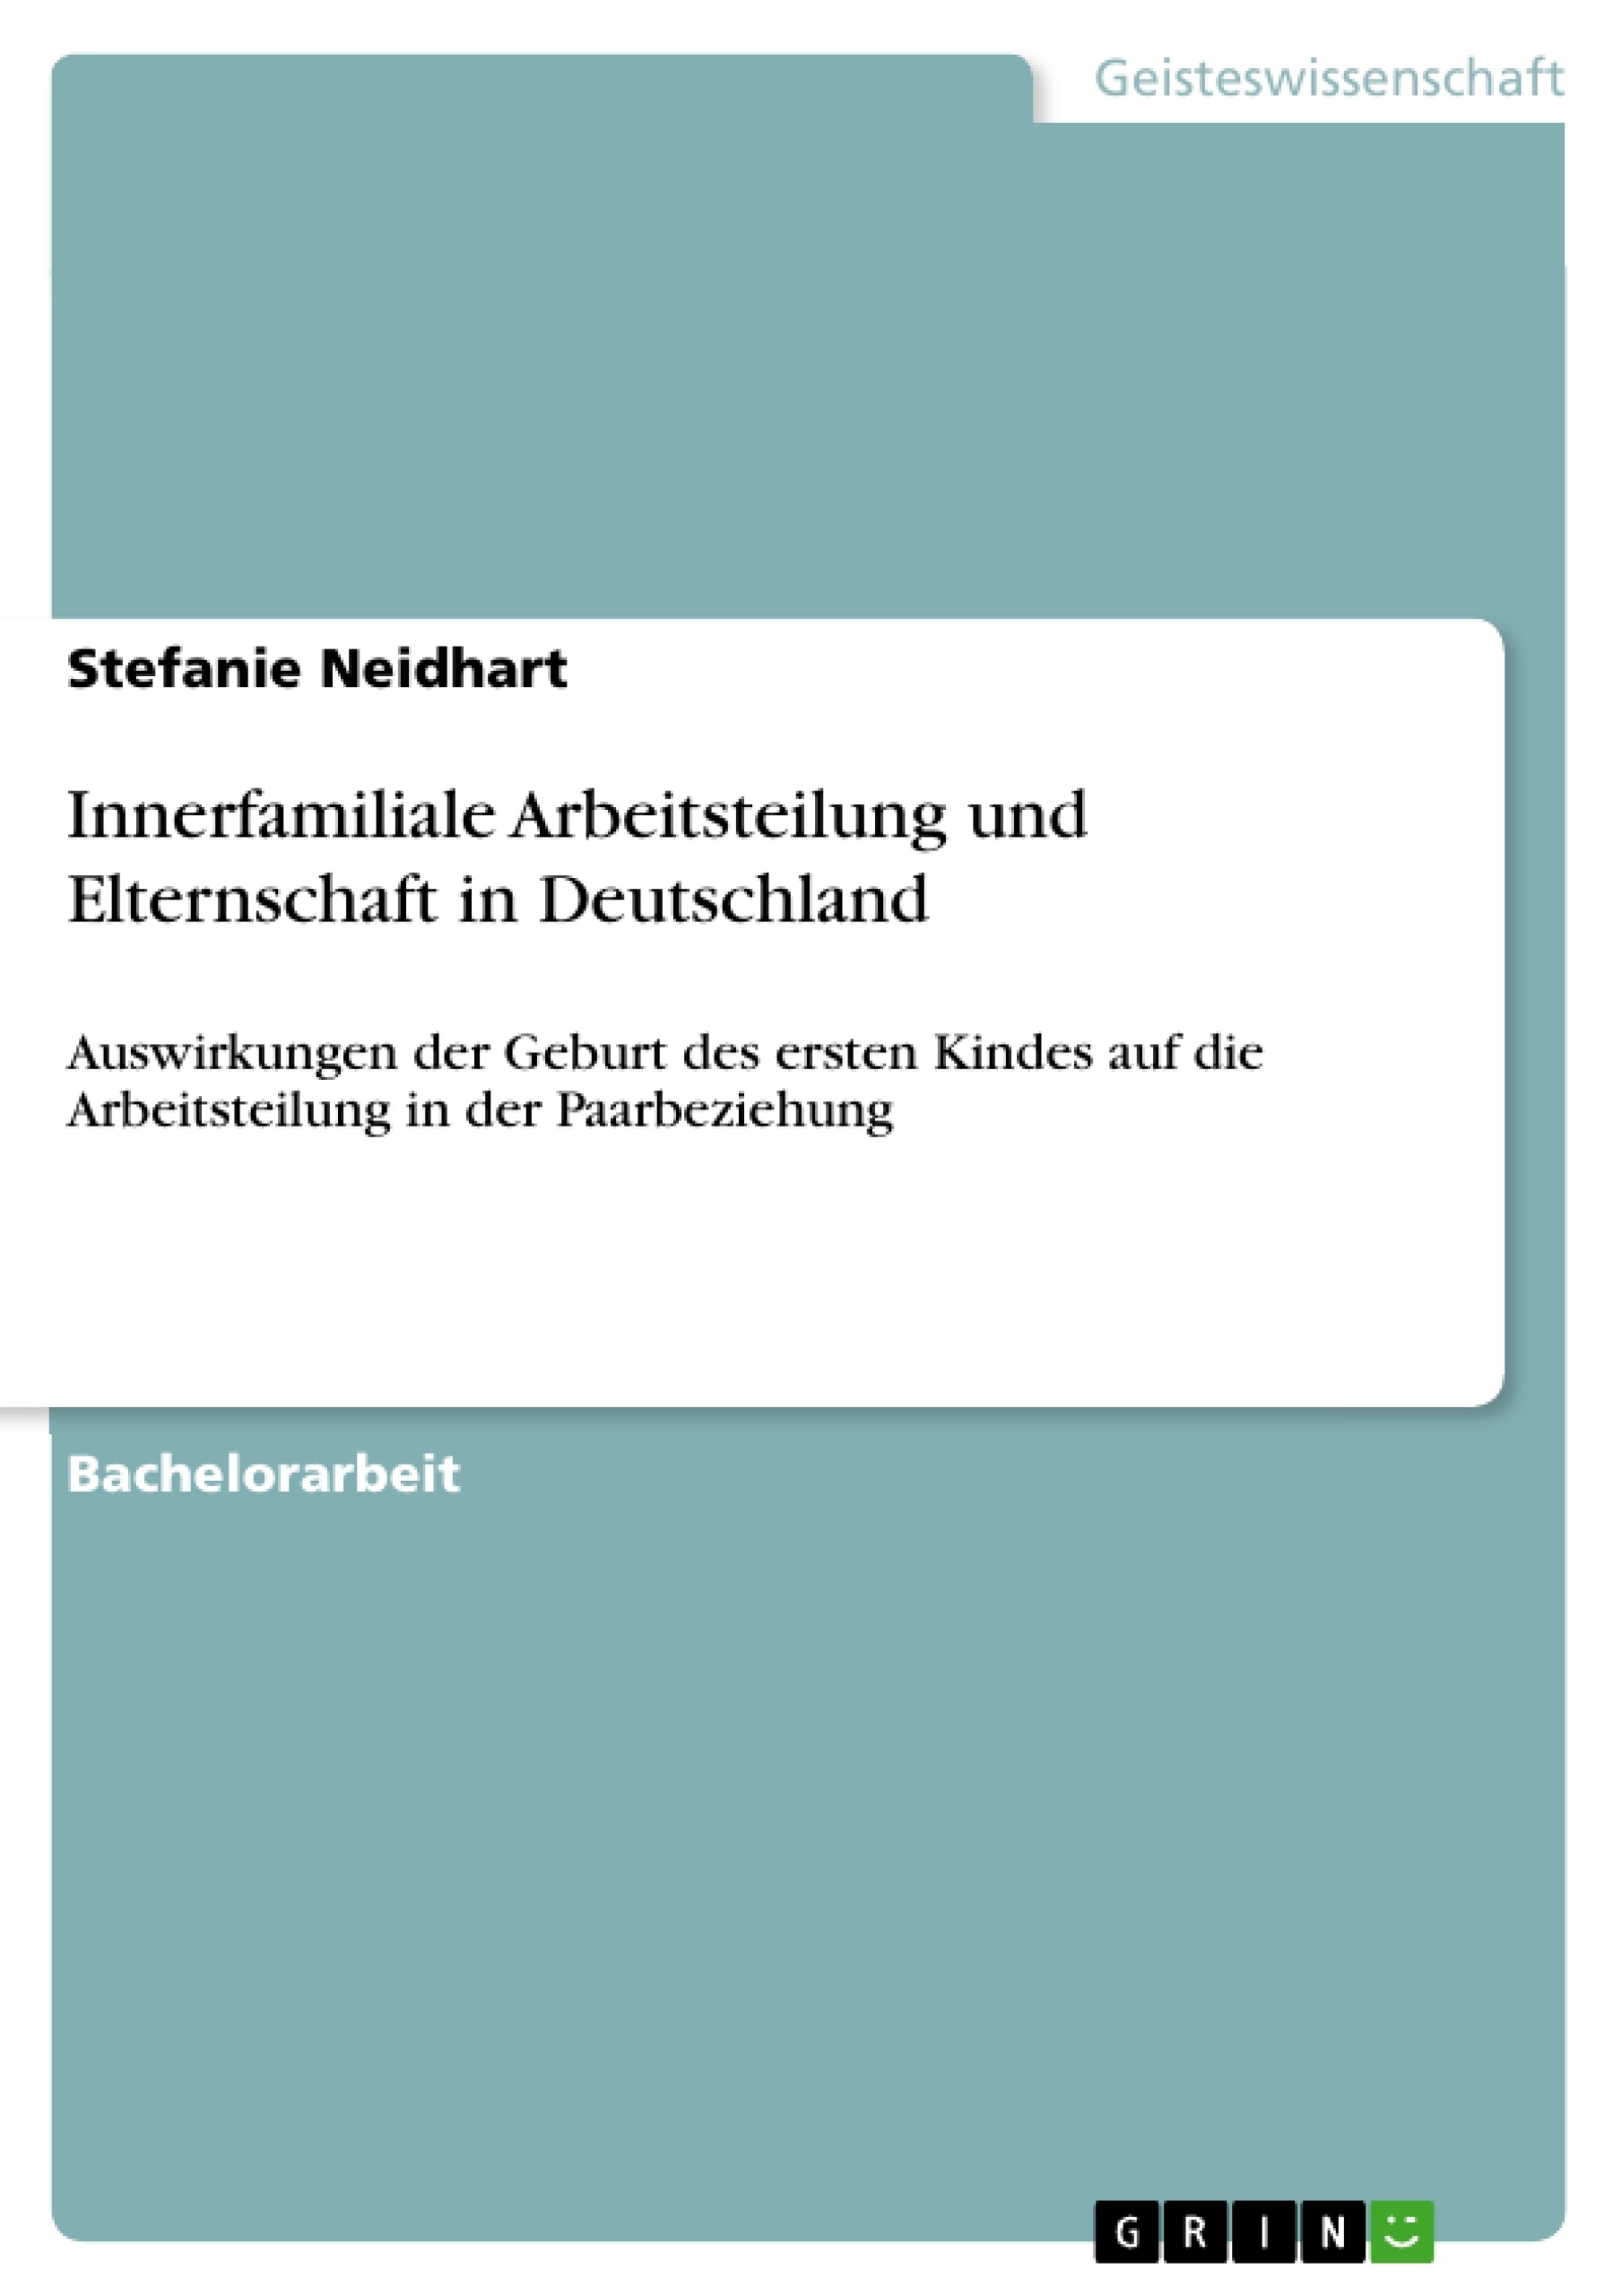 Title: Innerfamiliale Arbeitsteilung und Elternschaft in Deutschland